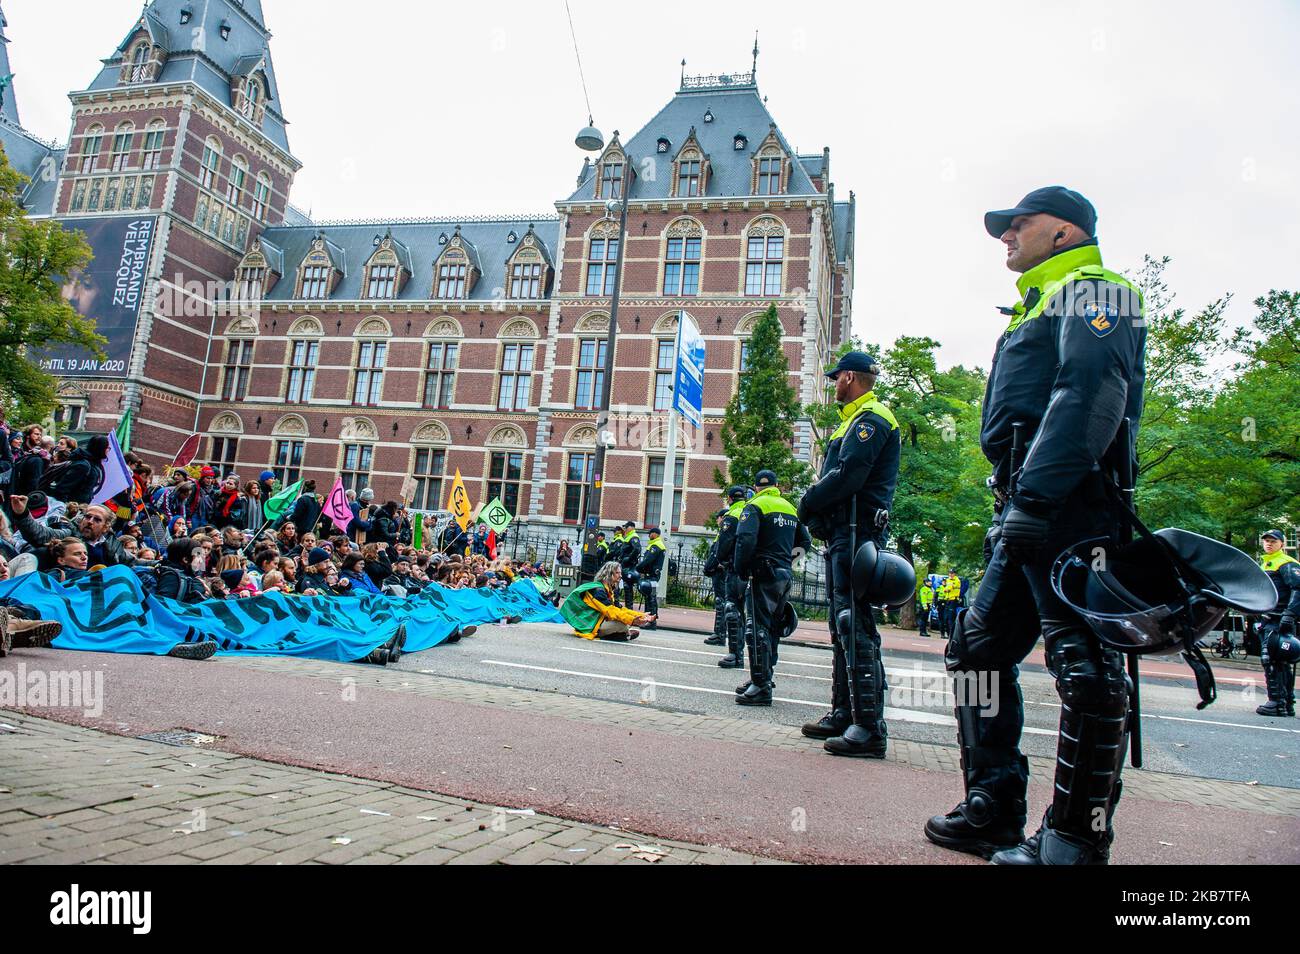 2 Wochen lang werden sich der Extinction Rebellion und verbündete Bewegungen in großen Städten auf der ganzen Welt versammeln und weiterhin gegen die Regierungen der Welt rebellieren, weil sie am 7. Oktober 2019 in Amsterdam, Niederlande, kriminell gegen die Klima- und Ökologiekrise vorgehen. XR-Klimaaktivisten in Amsterdam werden vor dem Rijksmuseum eine mehrtägige Blockade im großen Stil auf dem Museumbrug organisieren. Am frühen Morgen zeigten Hunderte von XR-Aktivisten auf der Brücke, wo eine sichtbare Polizeipräsenz bestand. Die Umweltgruppe Extinction Rebellion will die niederländische Regierung Stockfoto